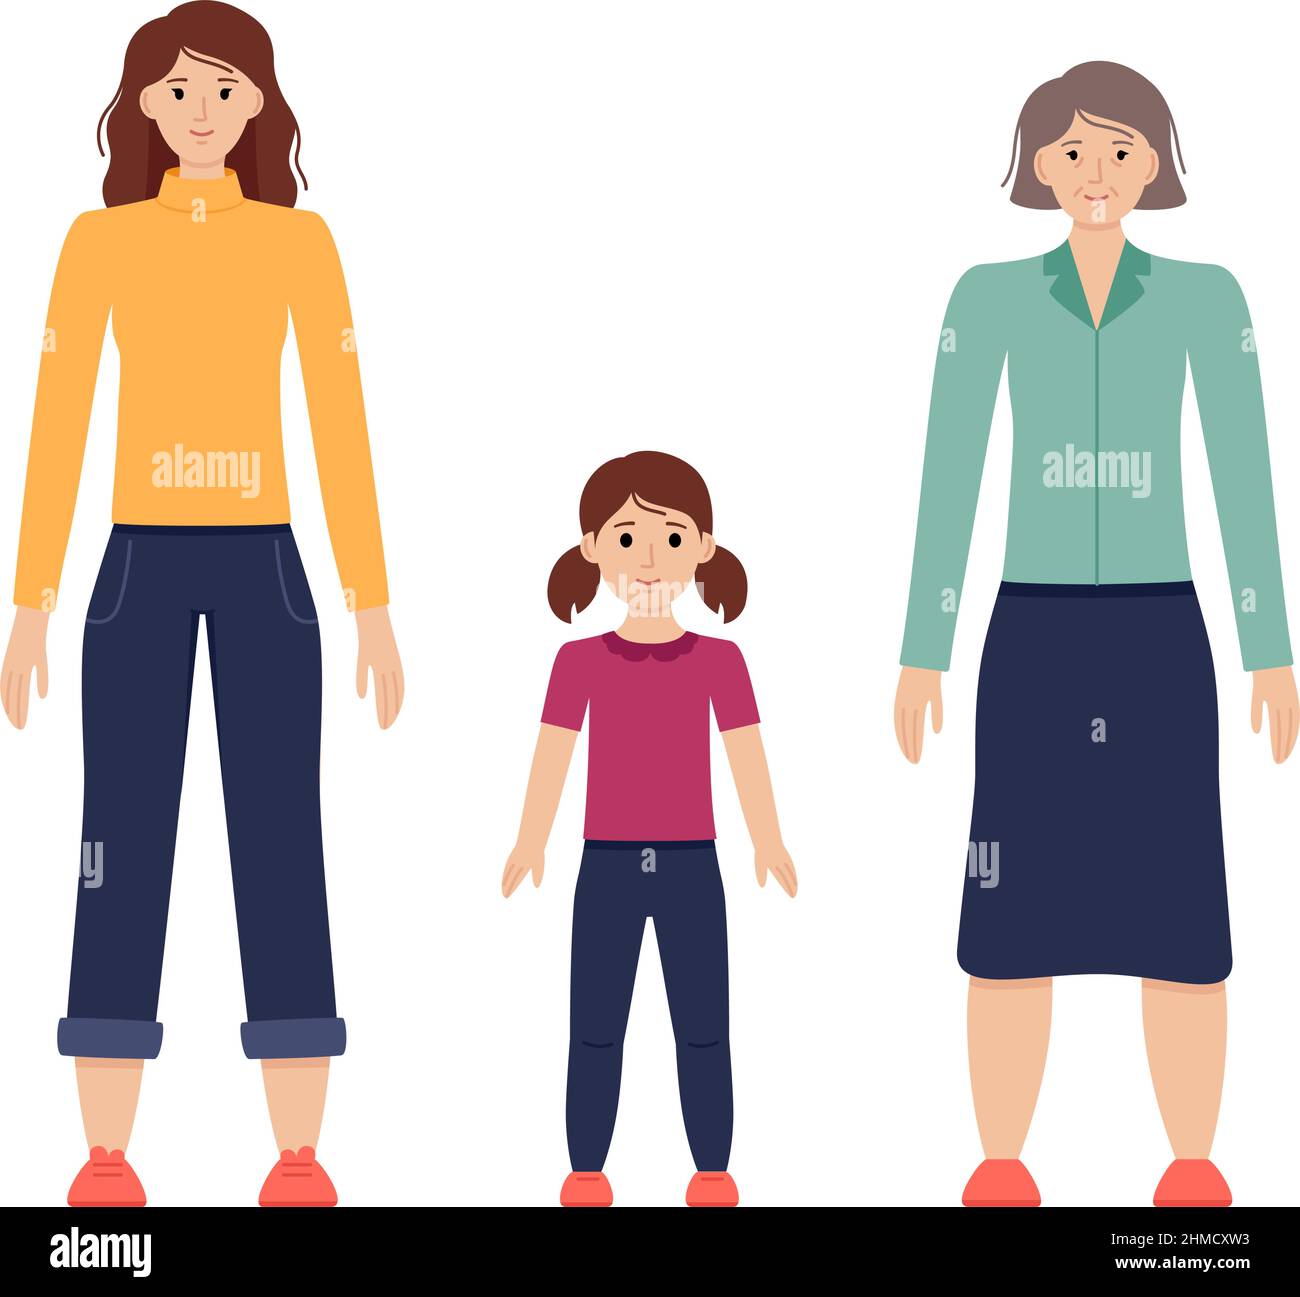 Illustration von Frauen im Alter von drei Jahren vom Kind bis zum Senioren, Vektordarstellung Stock Vektor